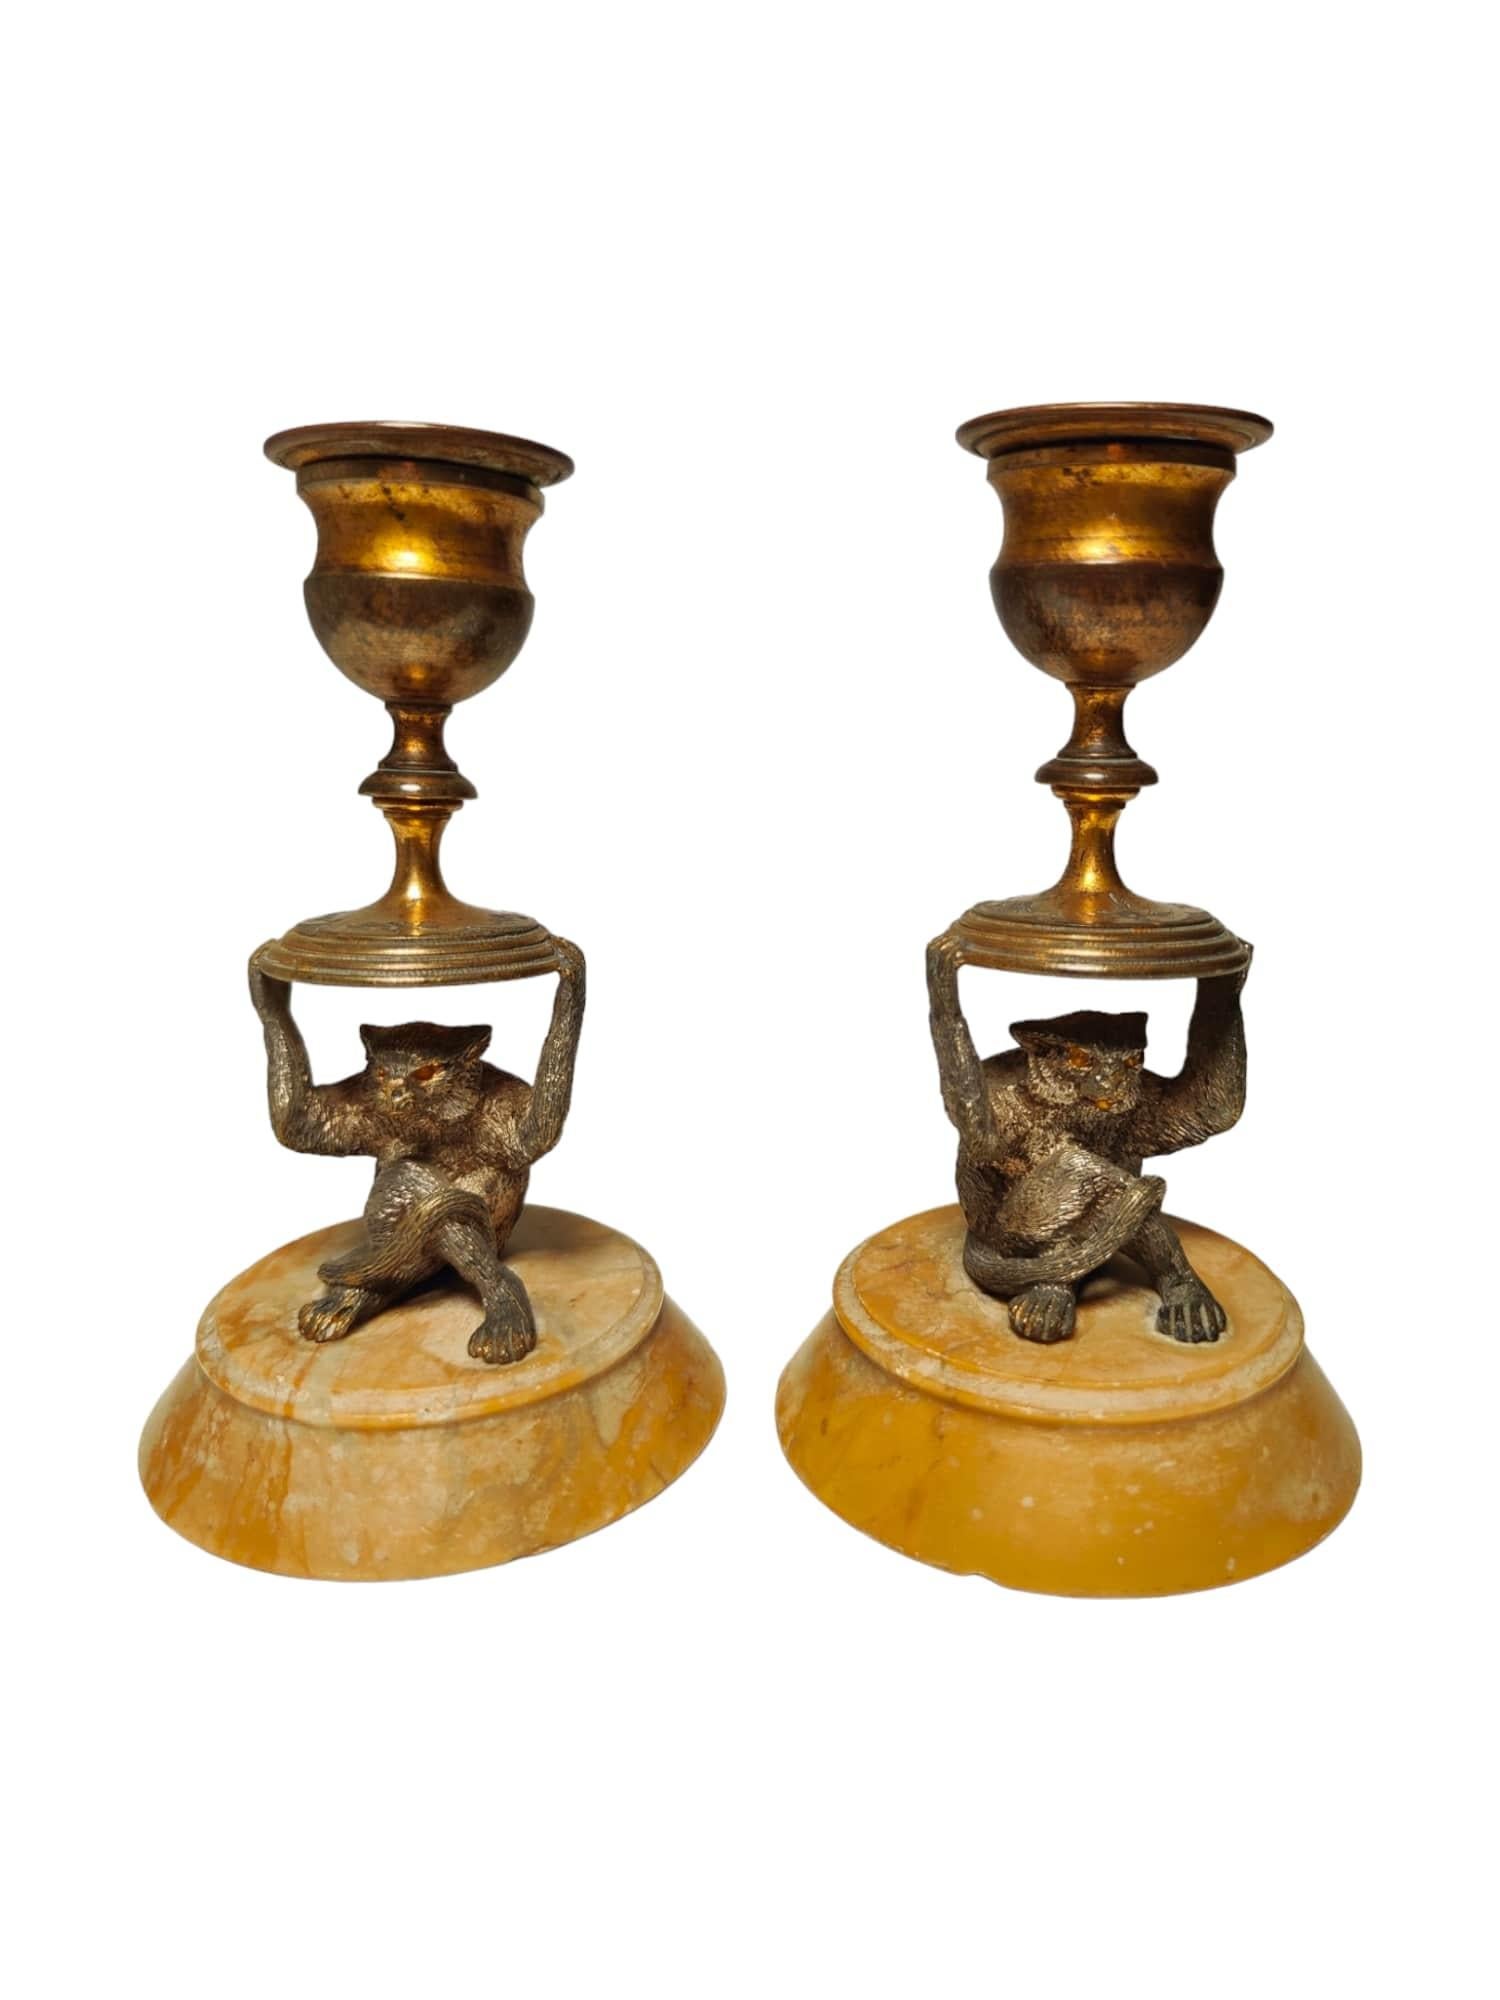 MATERIAL: Versilberte Bronze
Herkunft: Möglicherweise Österreich
Epoche: 19. Jahrhundert
Abmessungen: 12 x 7 x 7 cm pro Stück
Eigenschaften und Details:
Dieses charmante Paar Miniatur-Kerzenhalter in Form von Affen ist aus versilberter Bronze